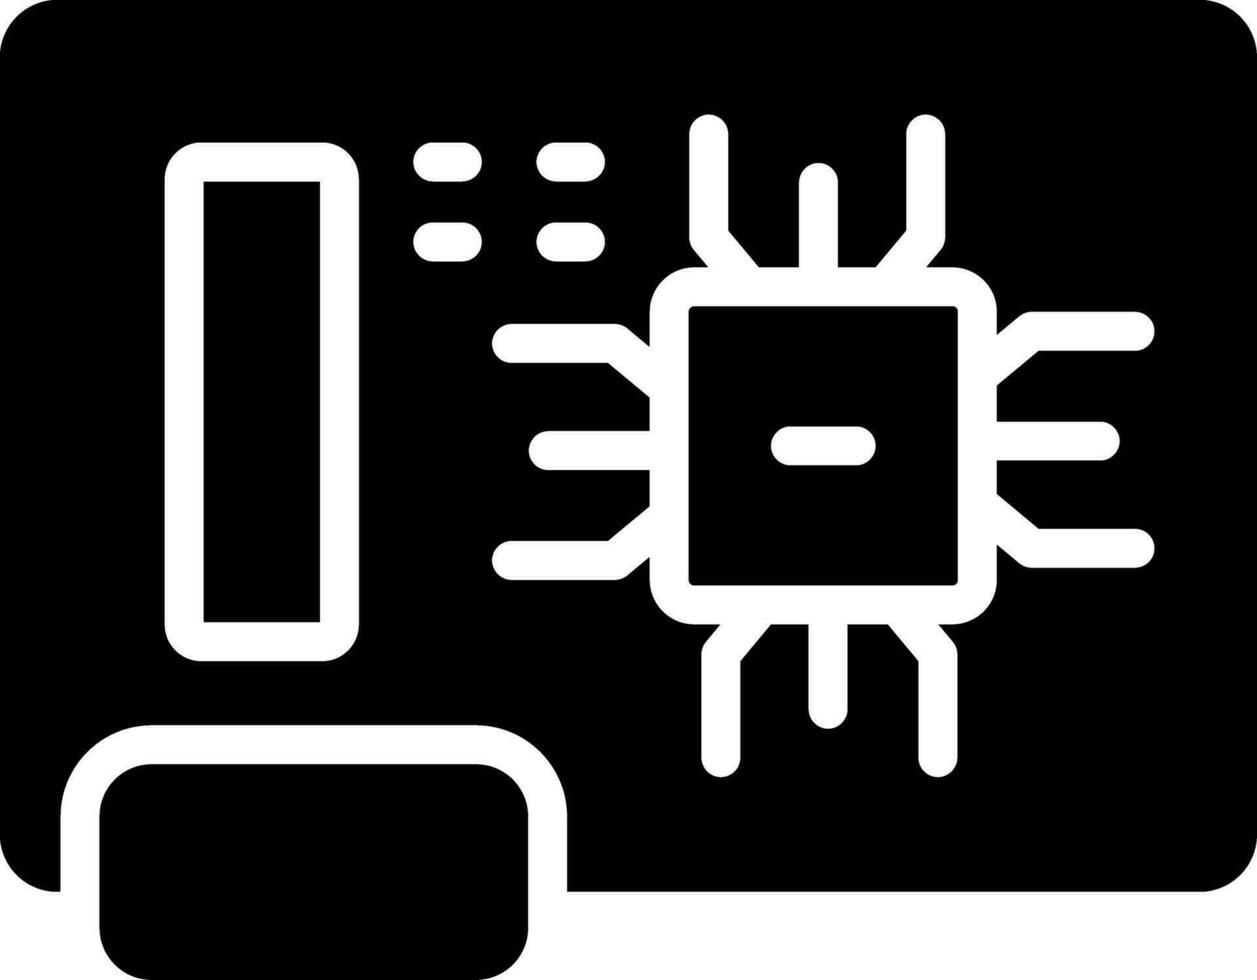 diseño de icono creativo de placa de circuito vector